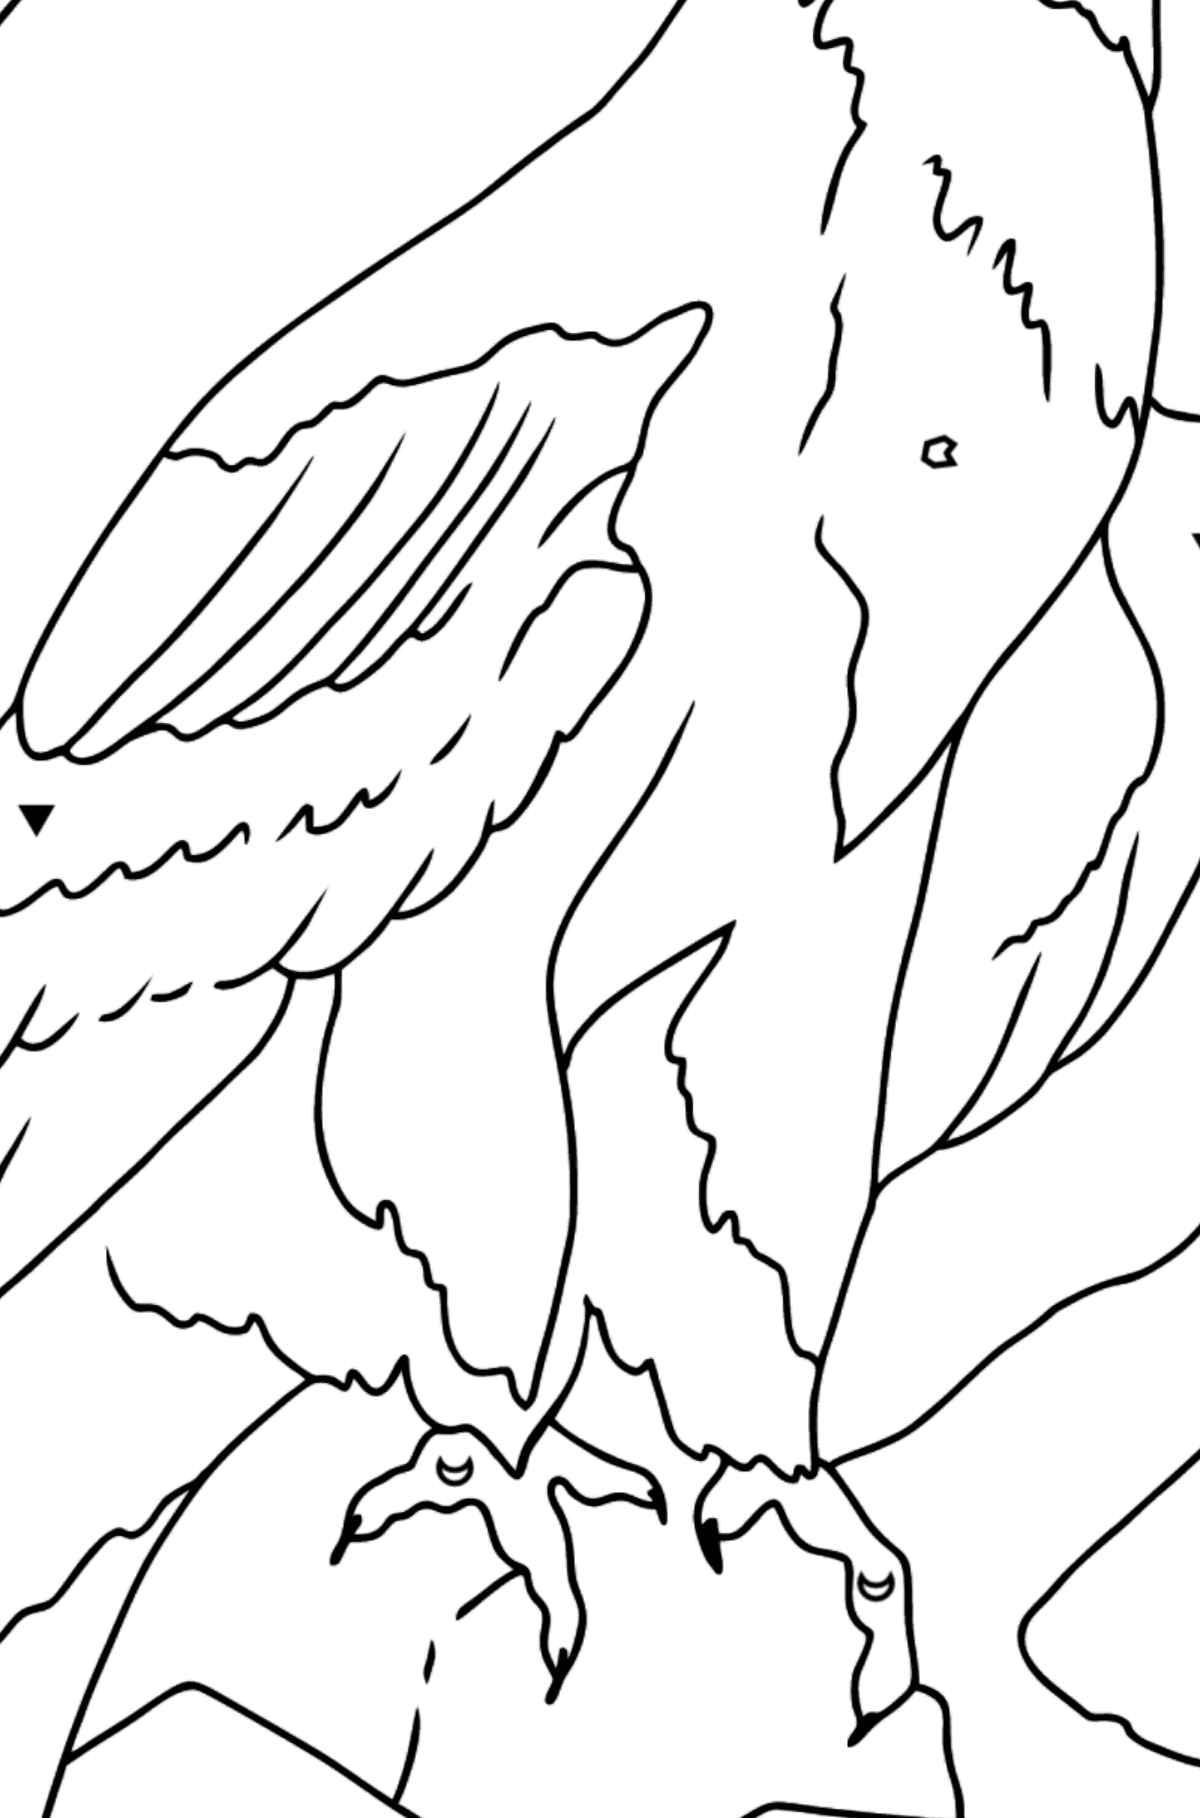 Coloriage - Un aigle en chasse - Coloriage par Symboles pour les Enfants